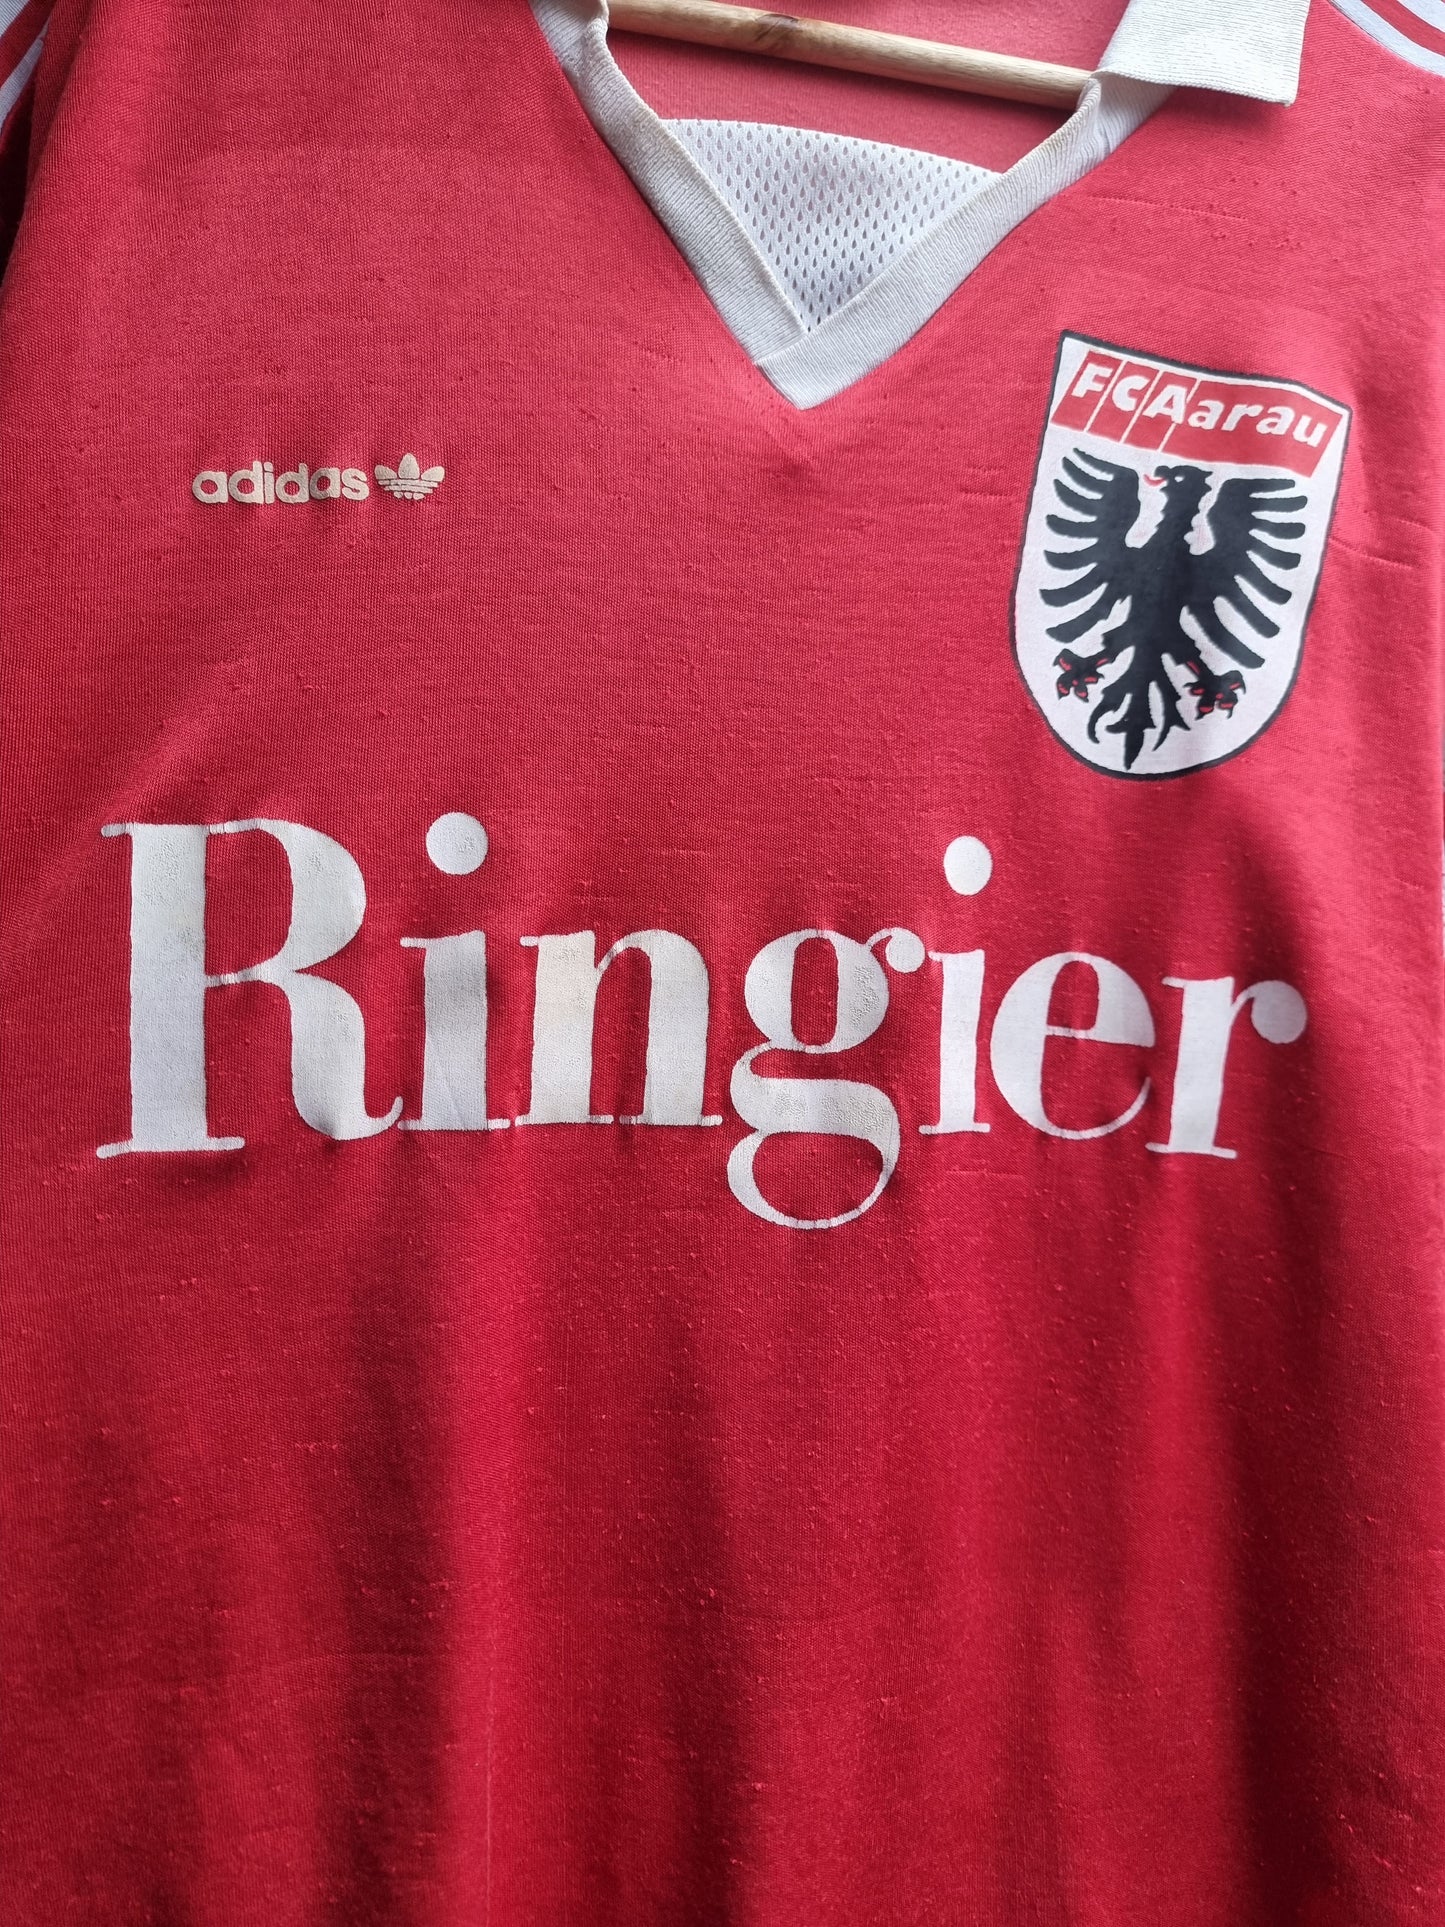 Adidas FC Aarau 89/90 Away Shirt Medium